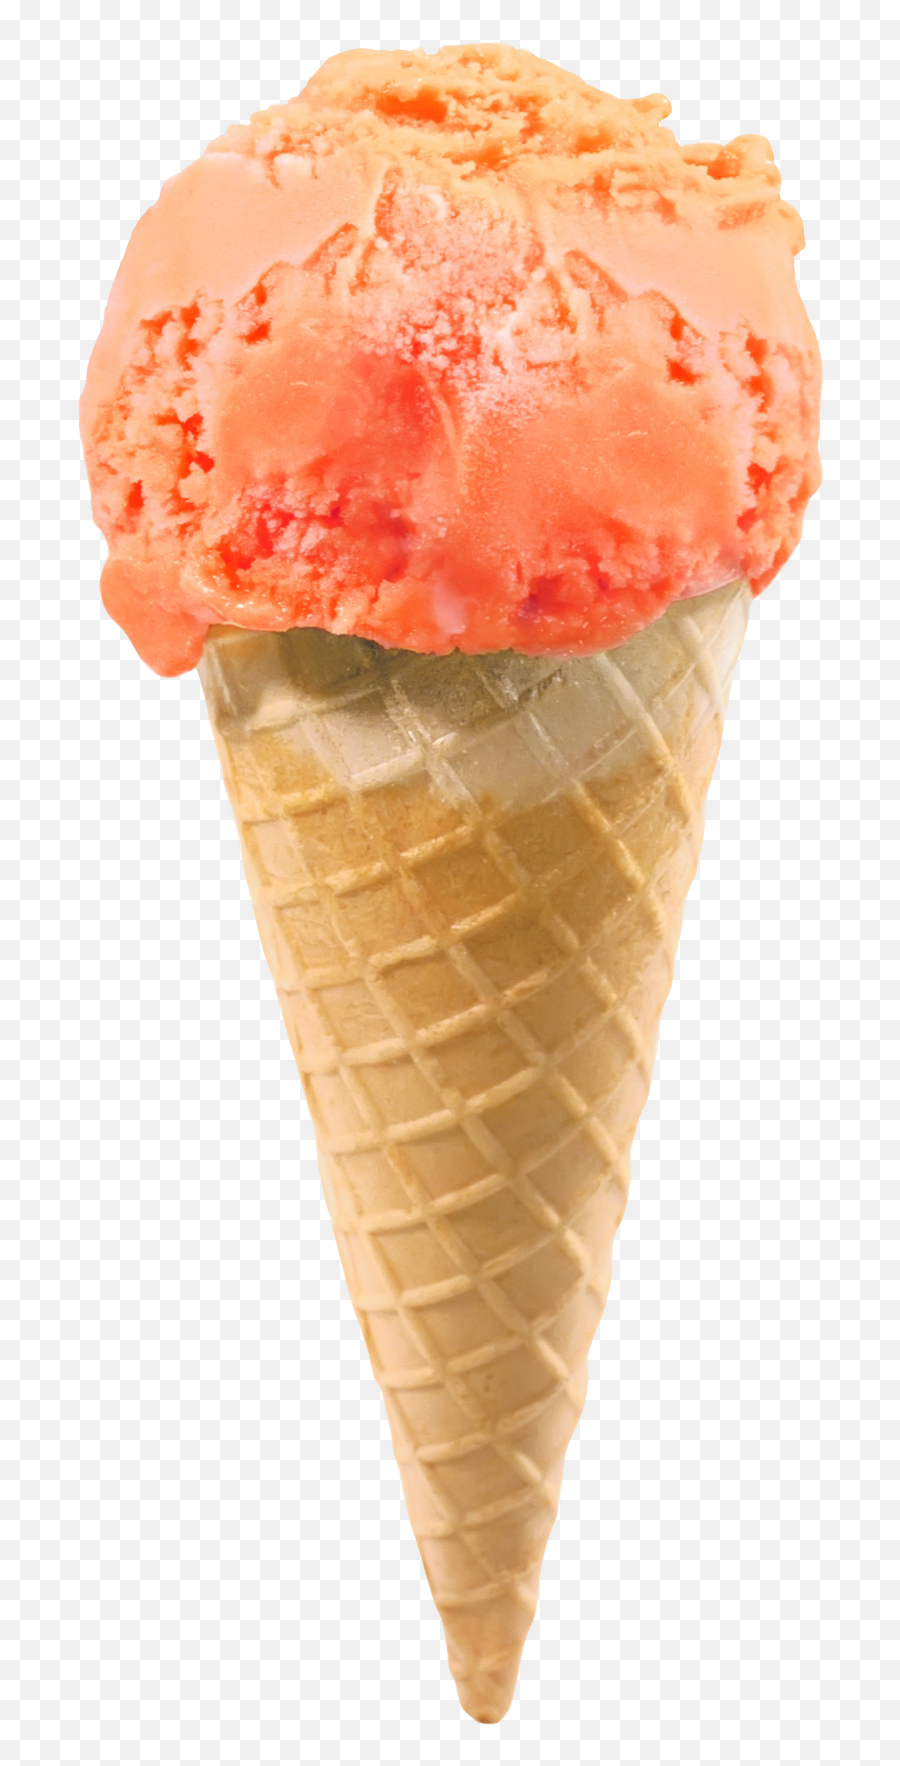 Ice Cream Cone Png Transparent Image - Ice Cream Cone Png,Icecream Png